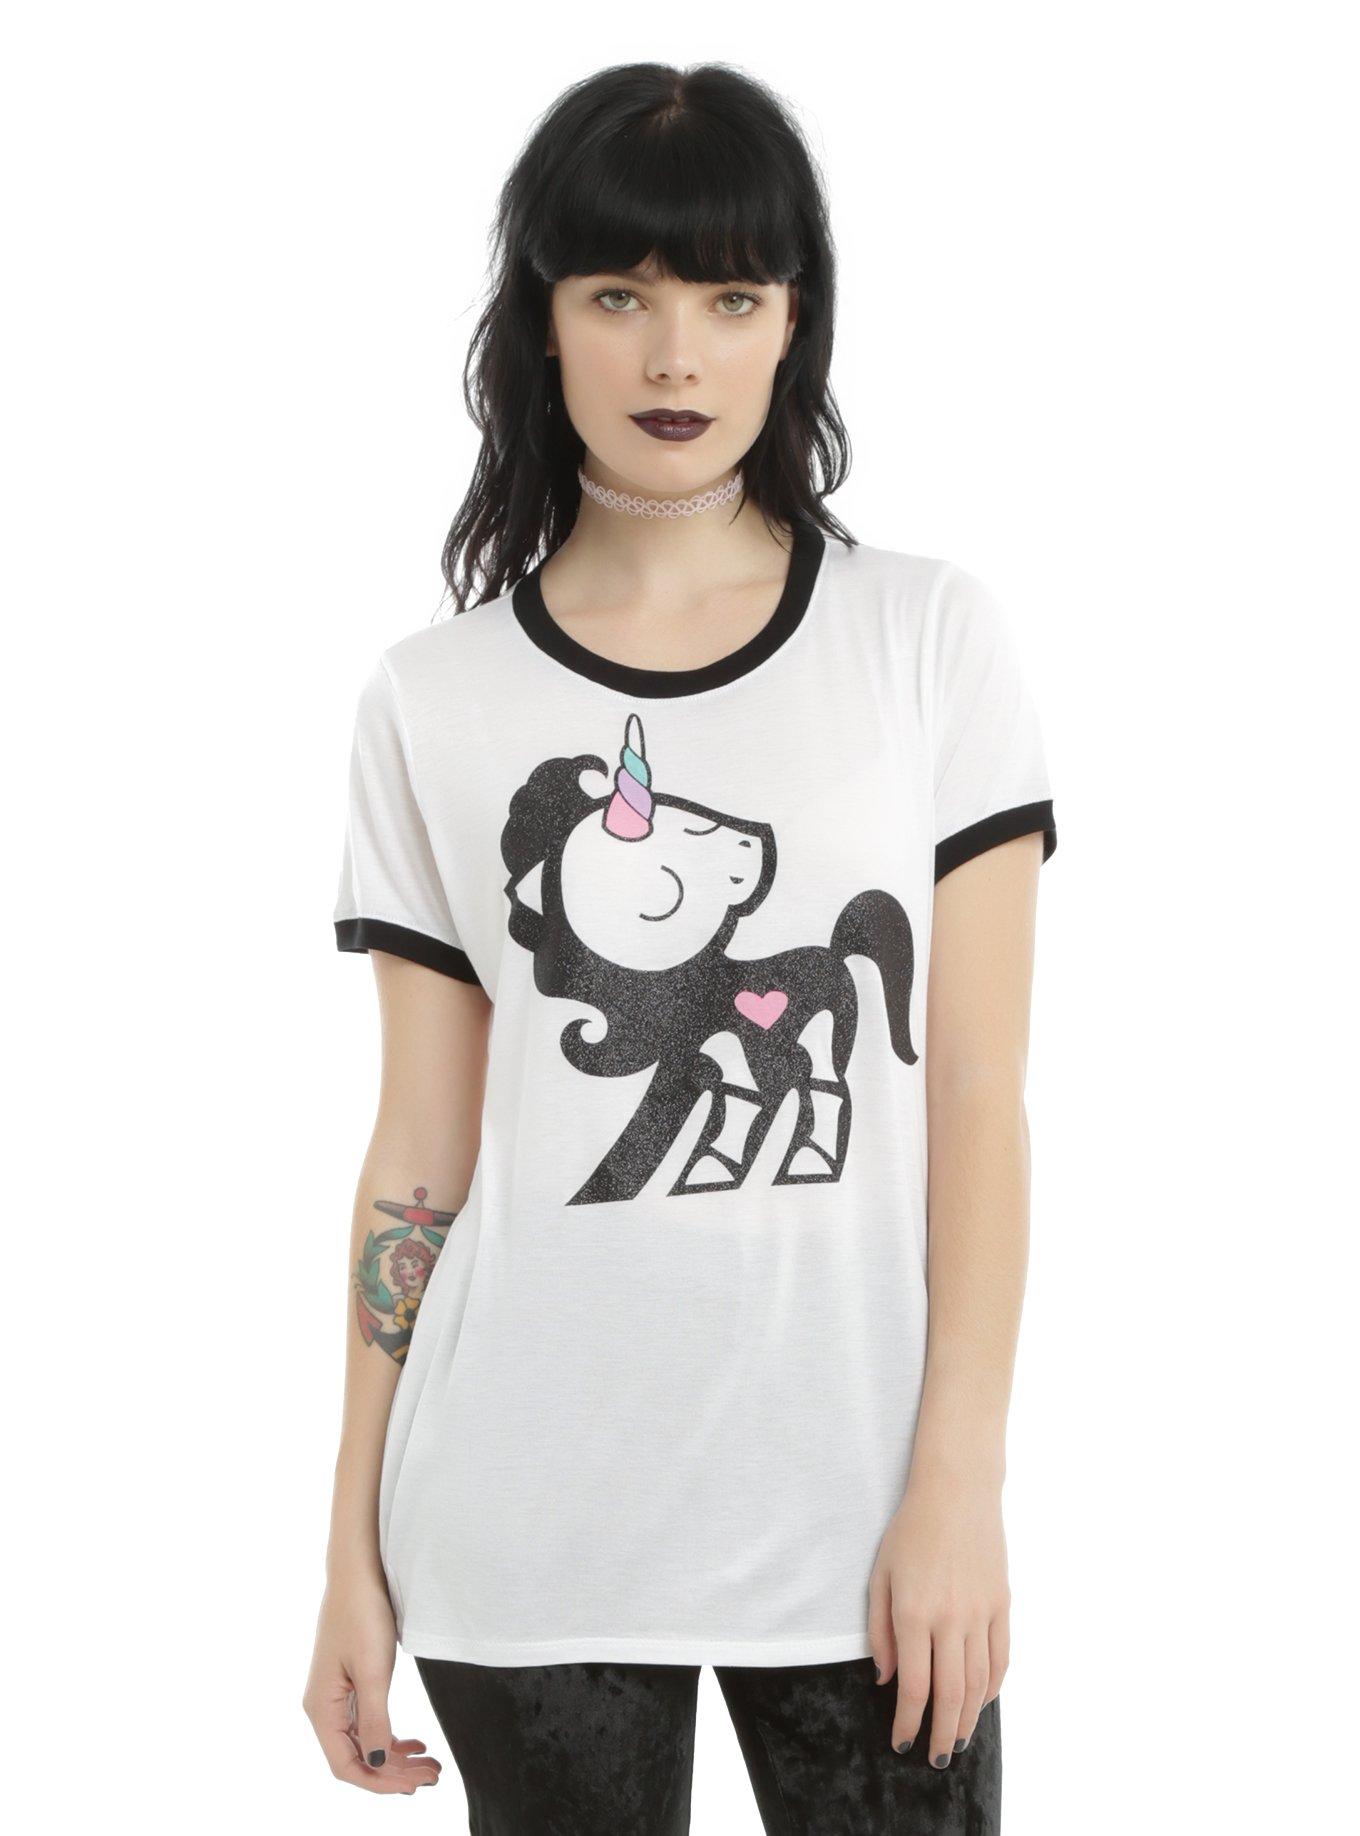 Skelanimals Bonita Unicorn Girls Ringer T-Shirt, WHITE, hi-res